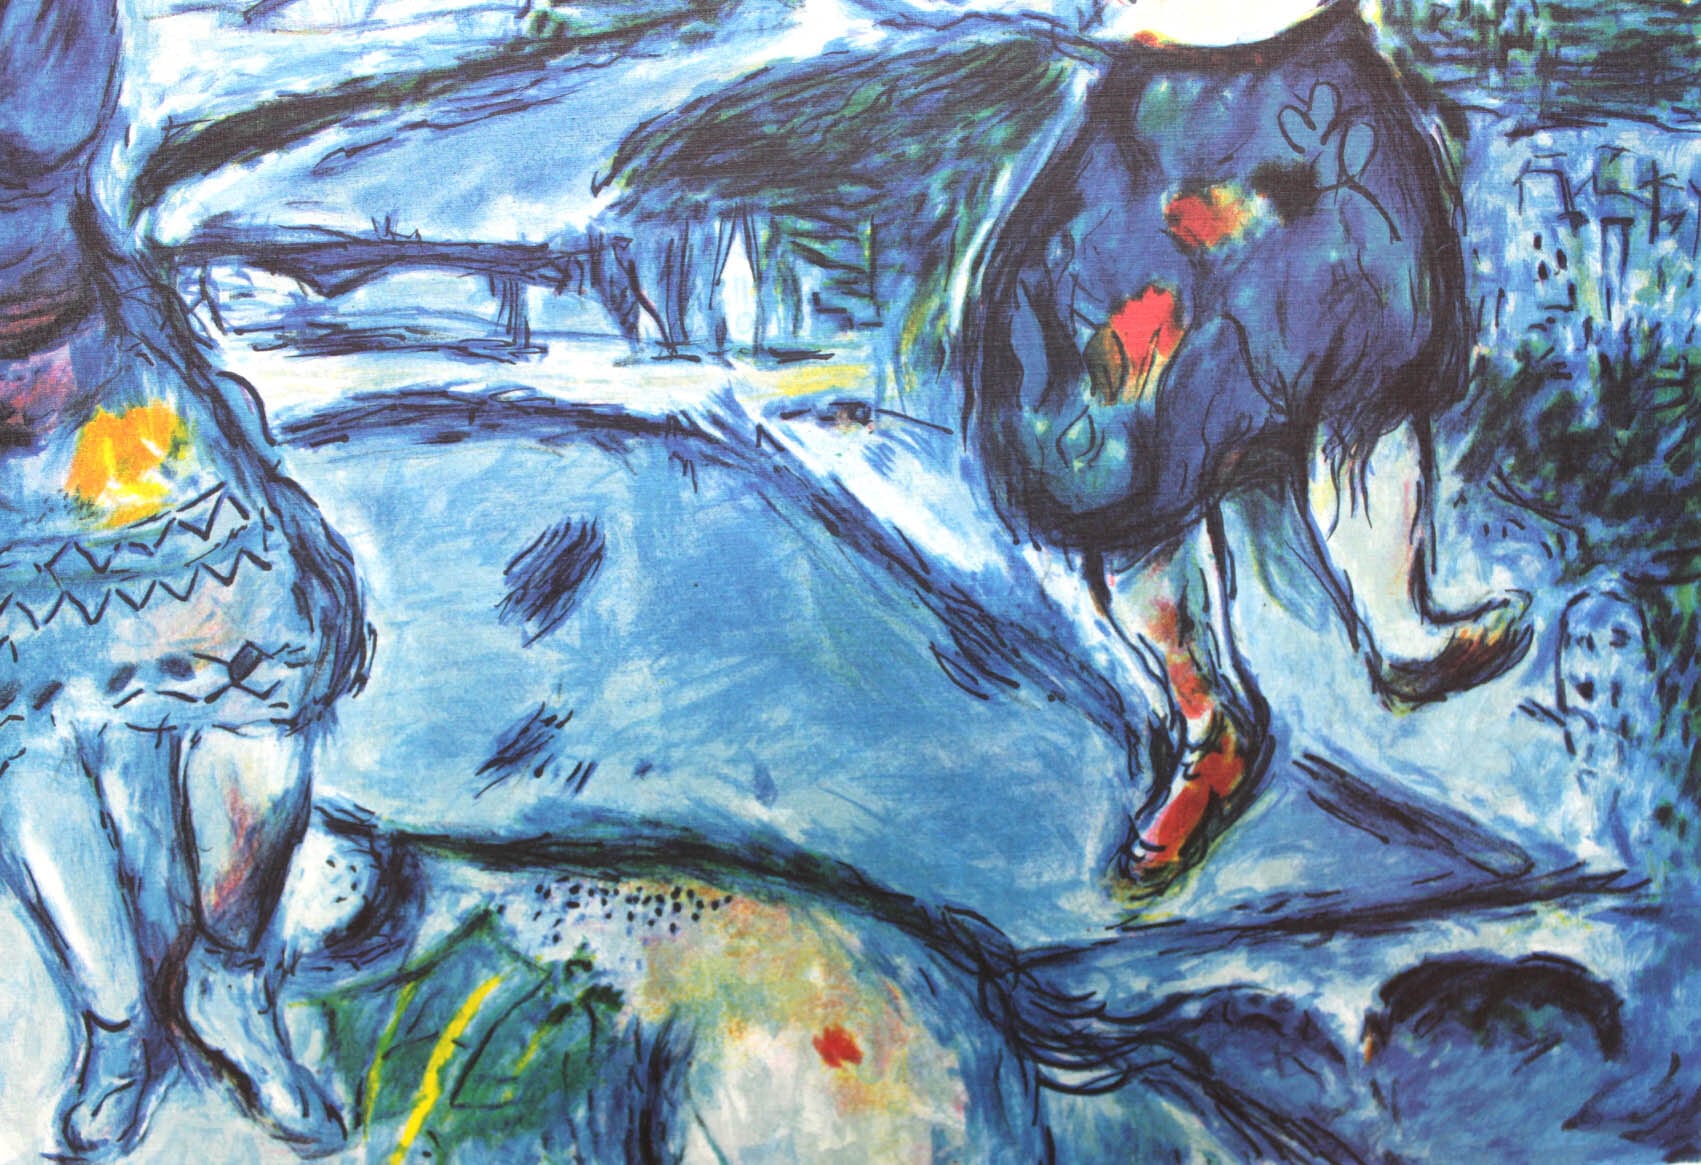 マルク・シャガール絵画「パリの恋人」作品証明書・展示用フック・限定500部エディション付複製画リトグラフ